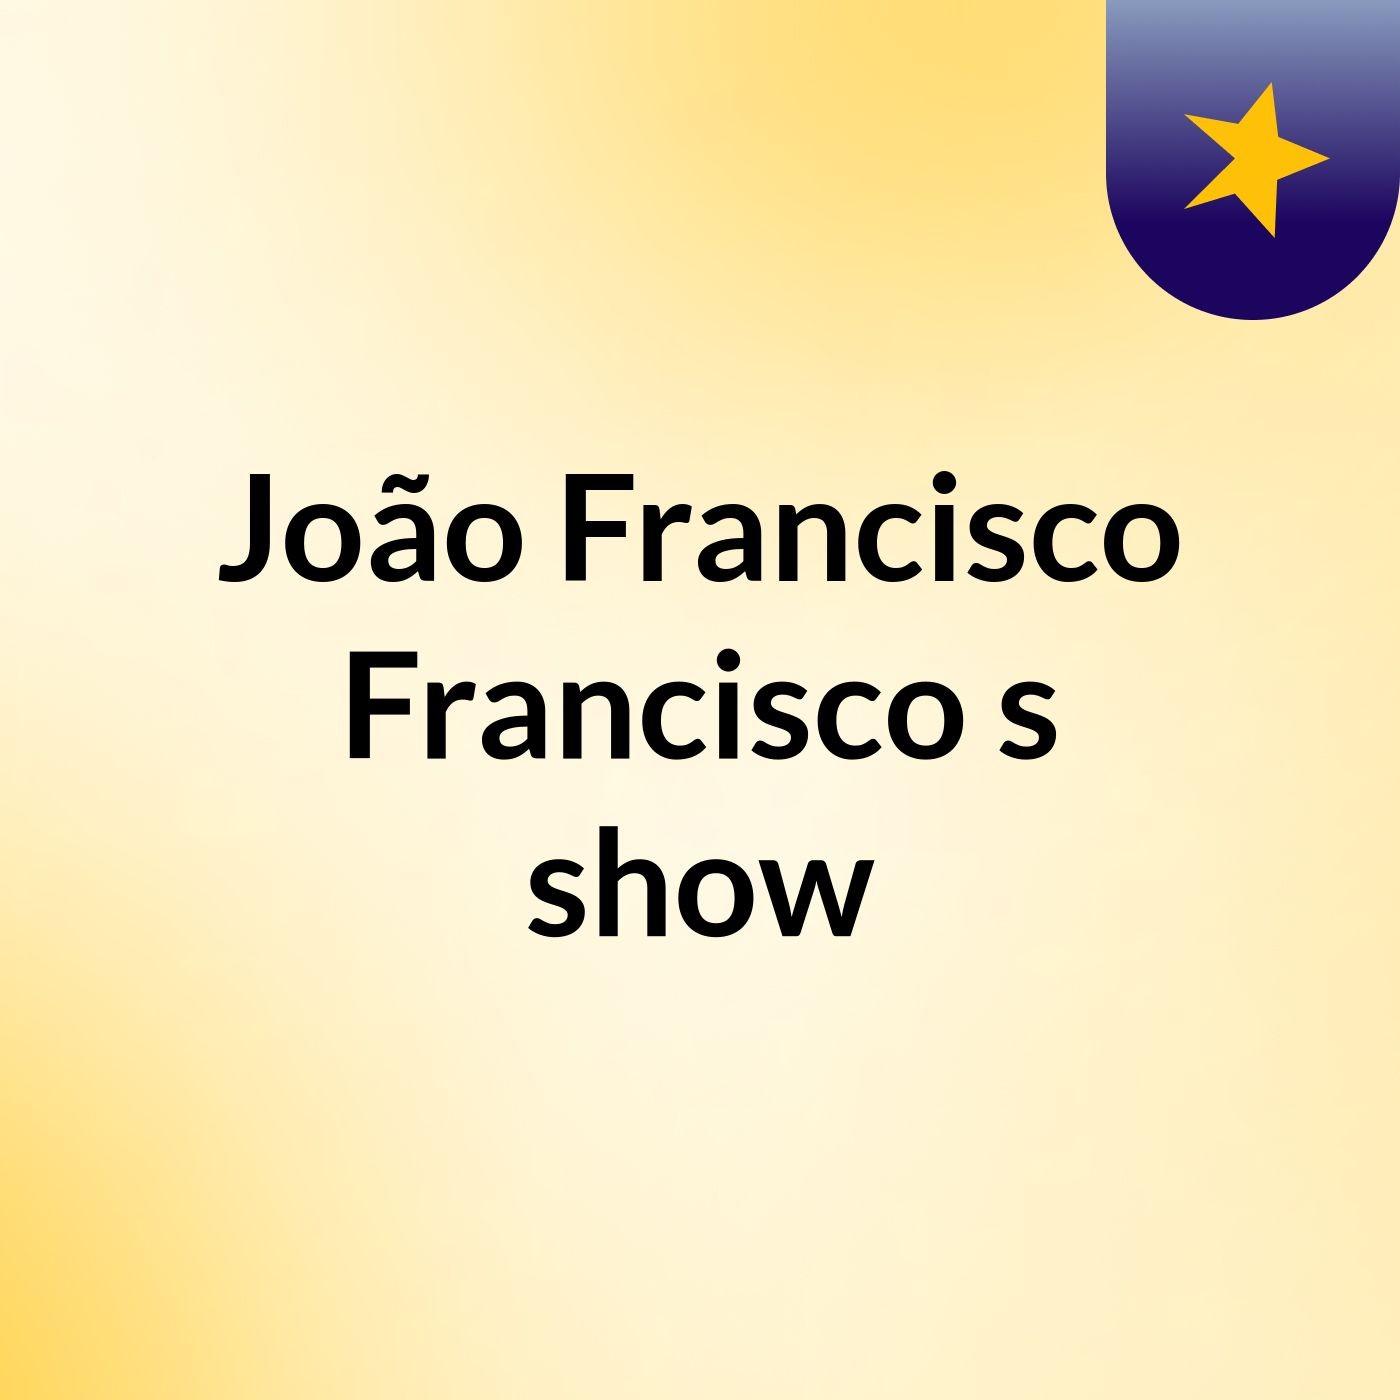 João Francisco Francisco's show